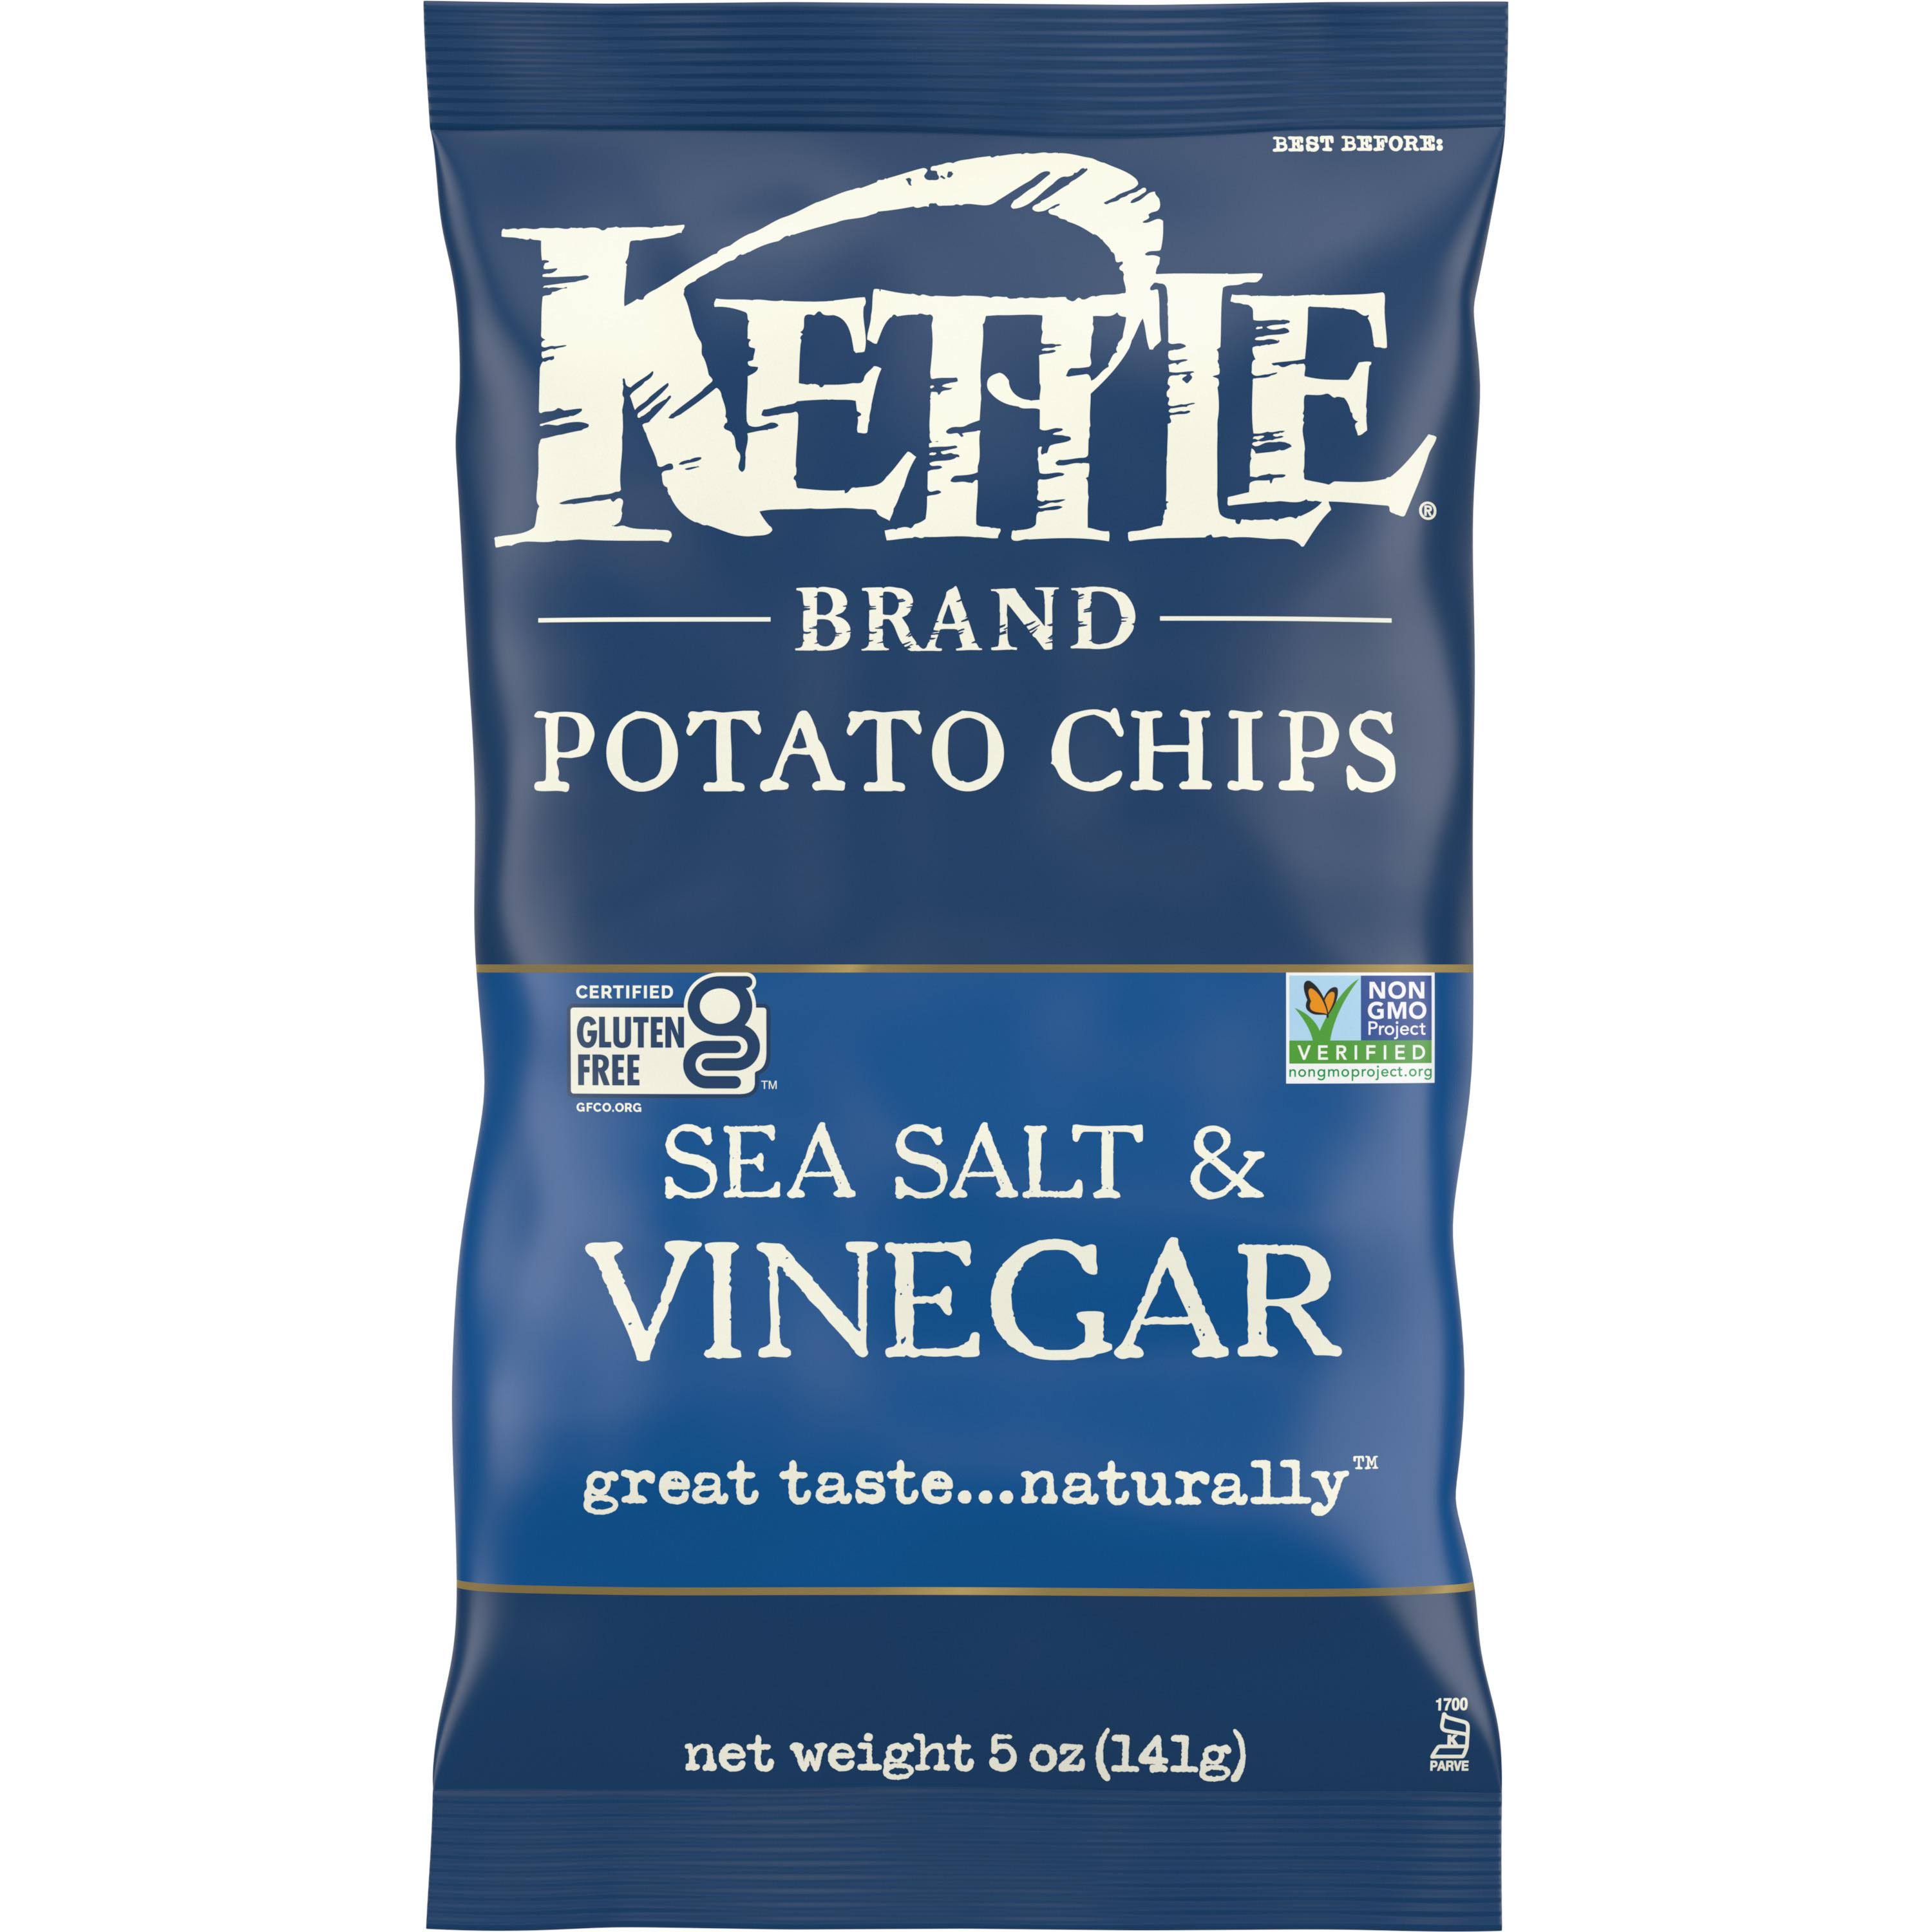 Kettle Potato Chips - Sea Salt & Vinegar, 142g